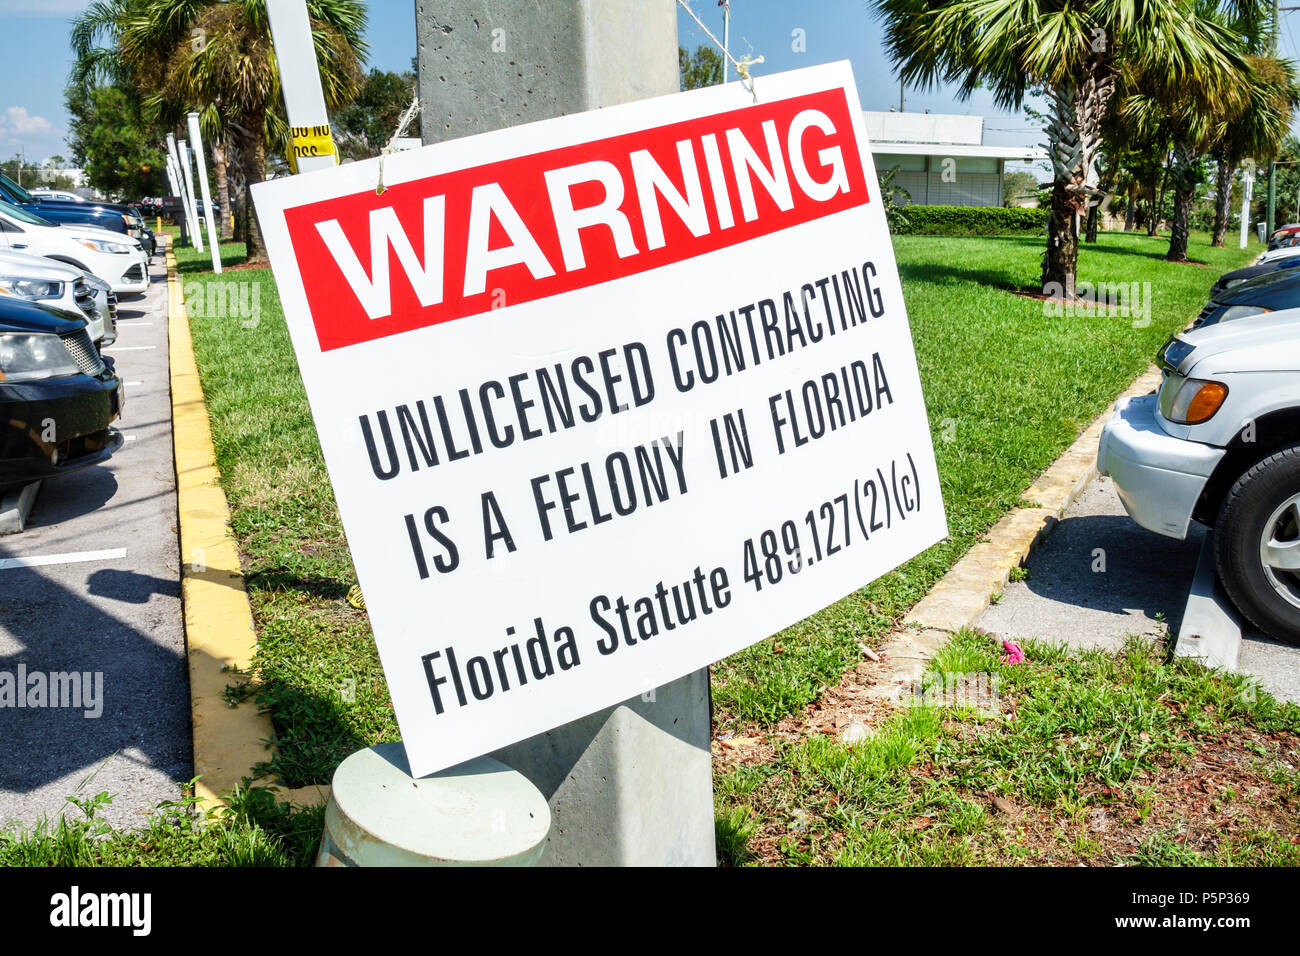 Immokalee Florida, segno di avvertimento non licenza contracting statuto felony, legge, FL170925216 Foto Stock